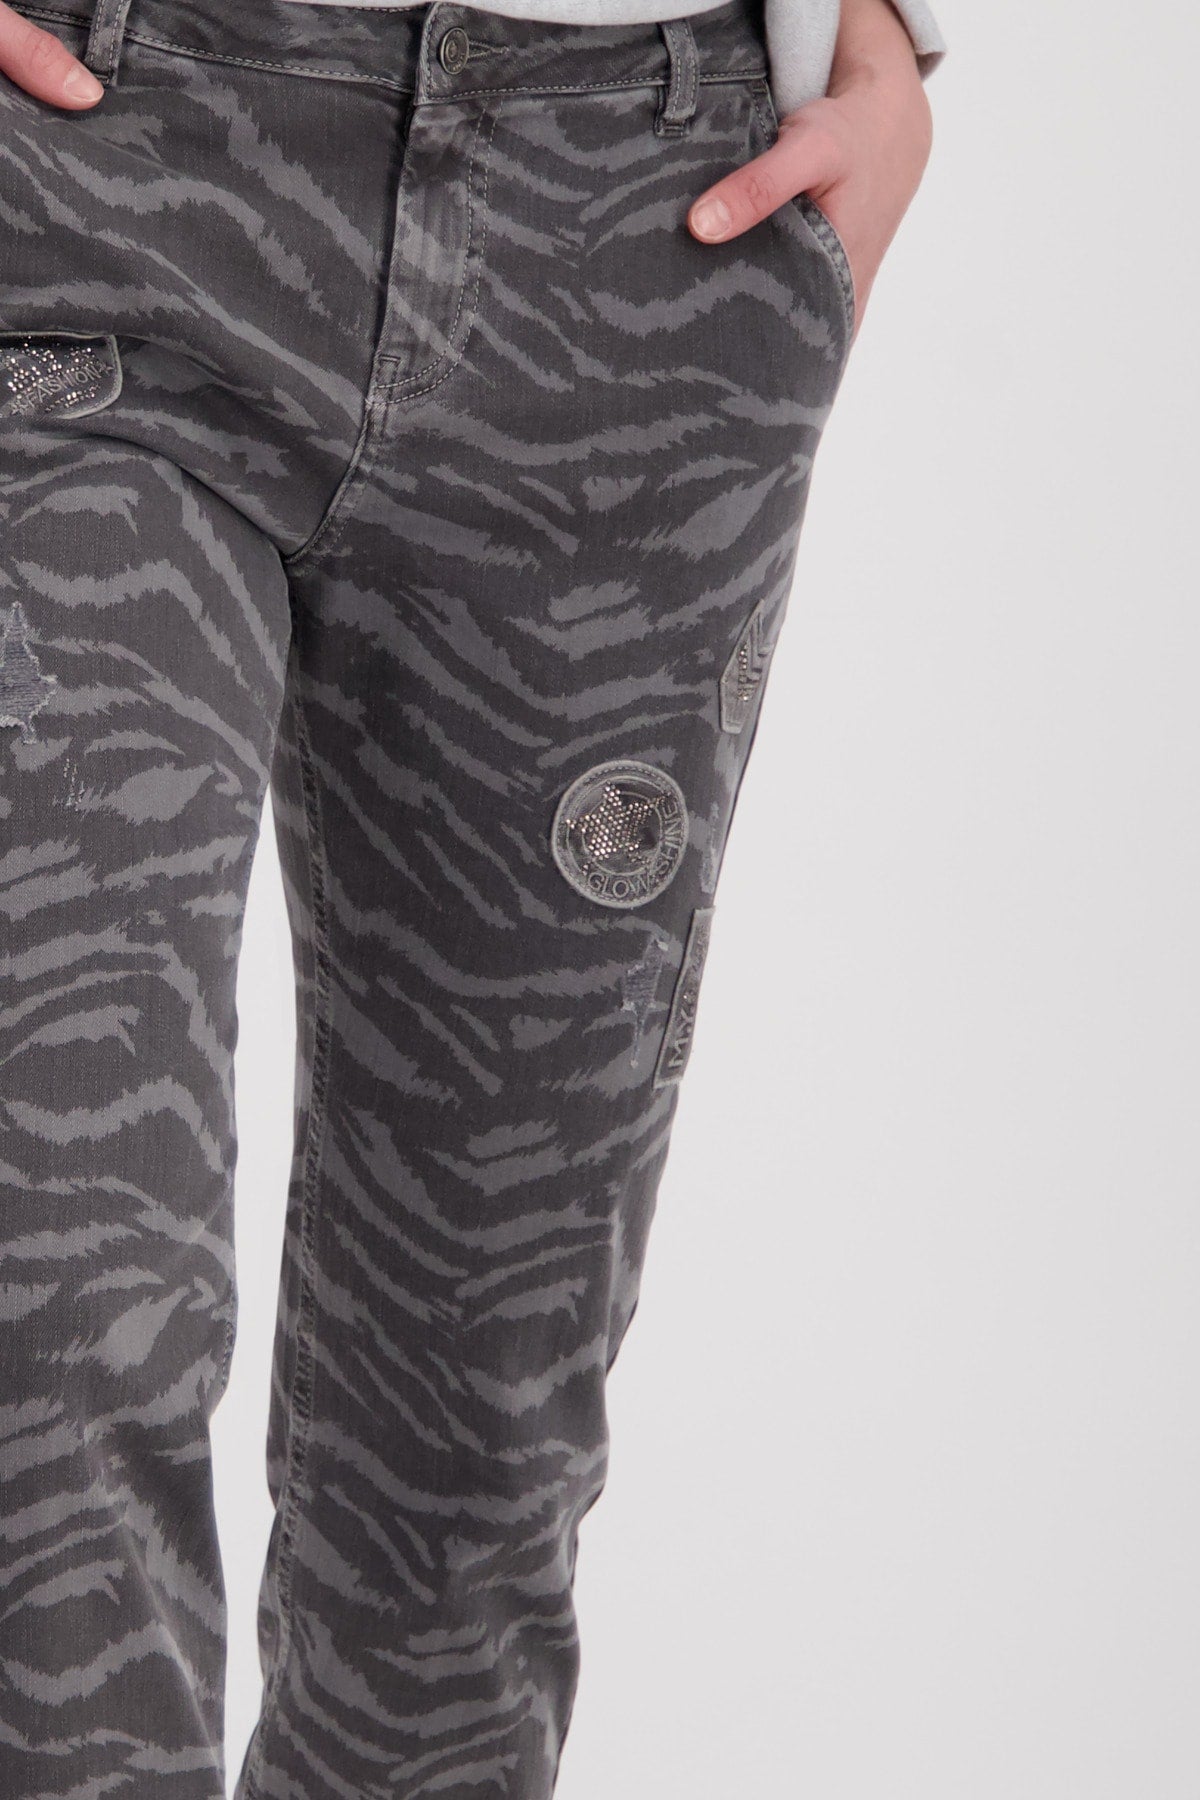 Monari Animal Print Trousers